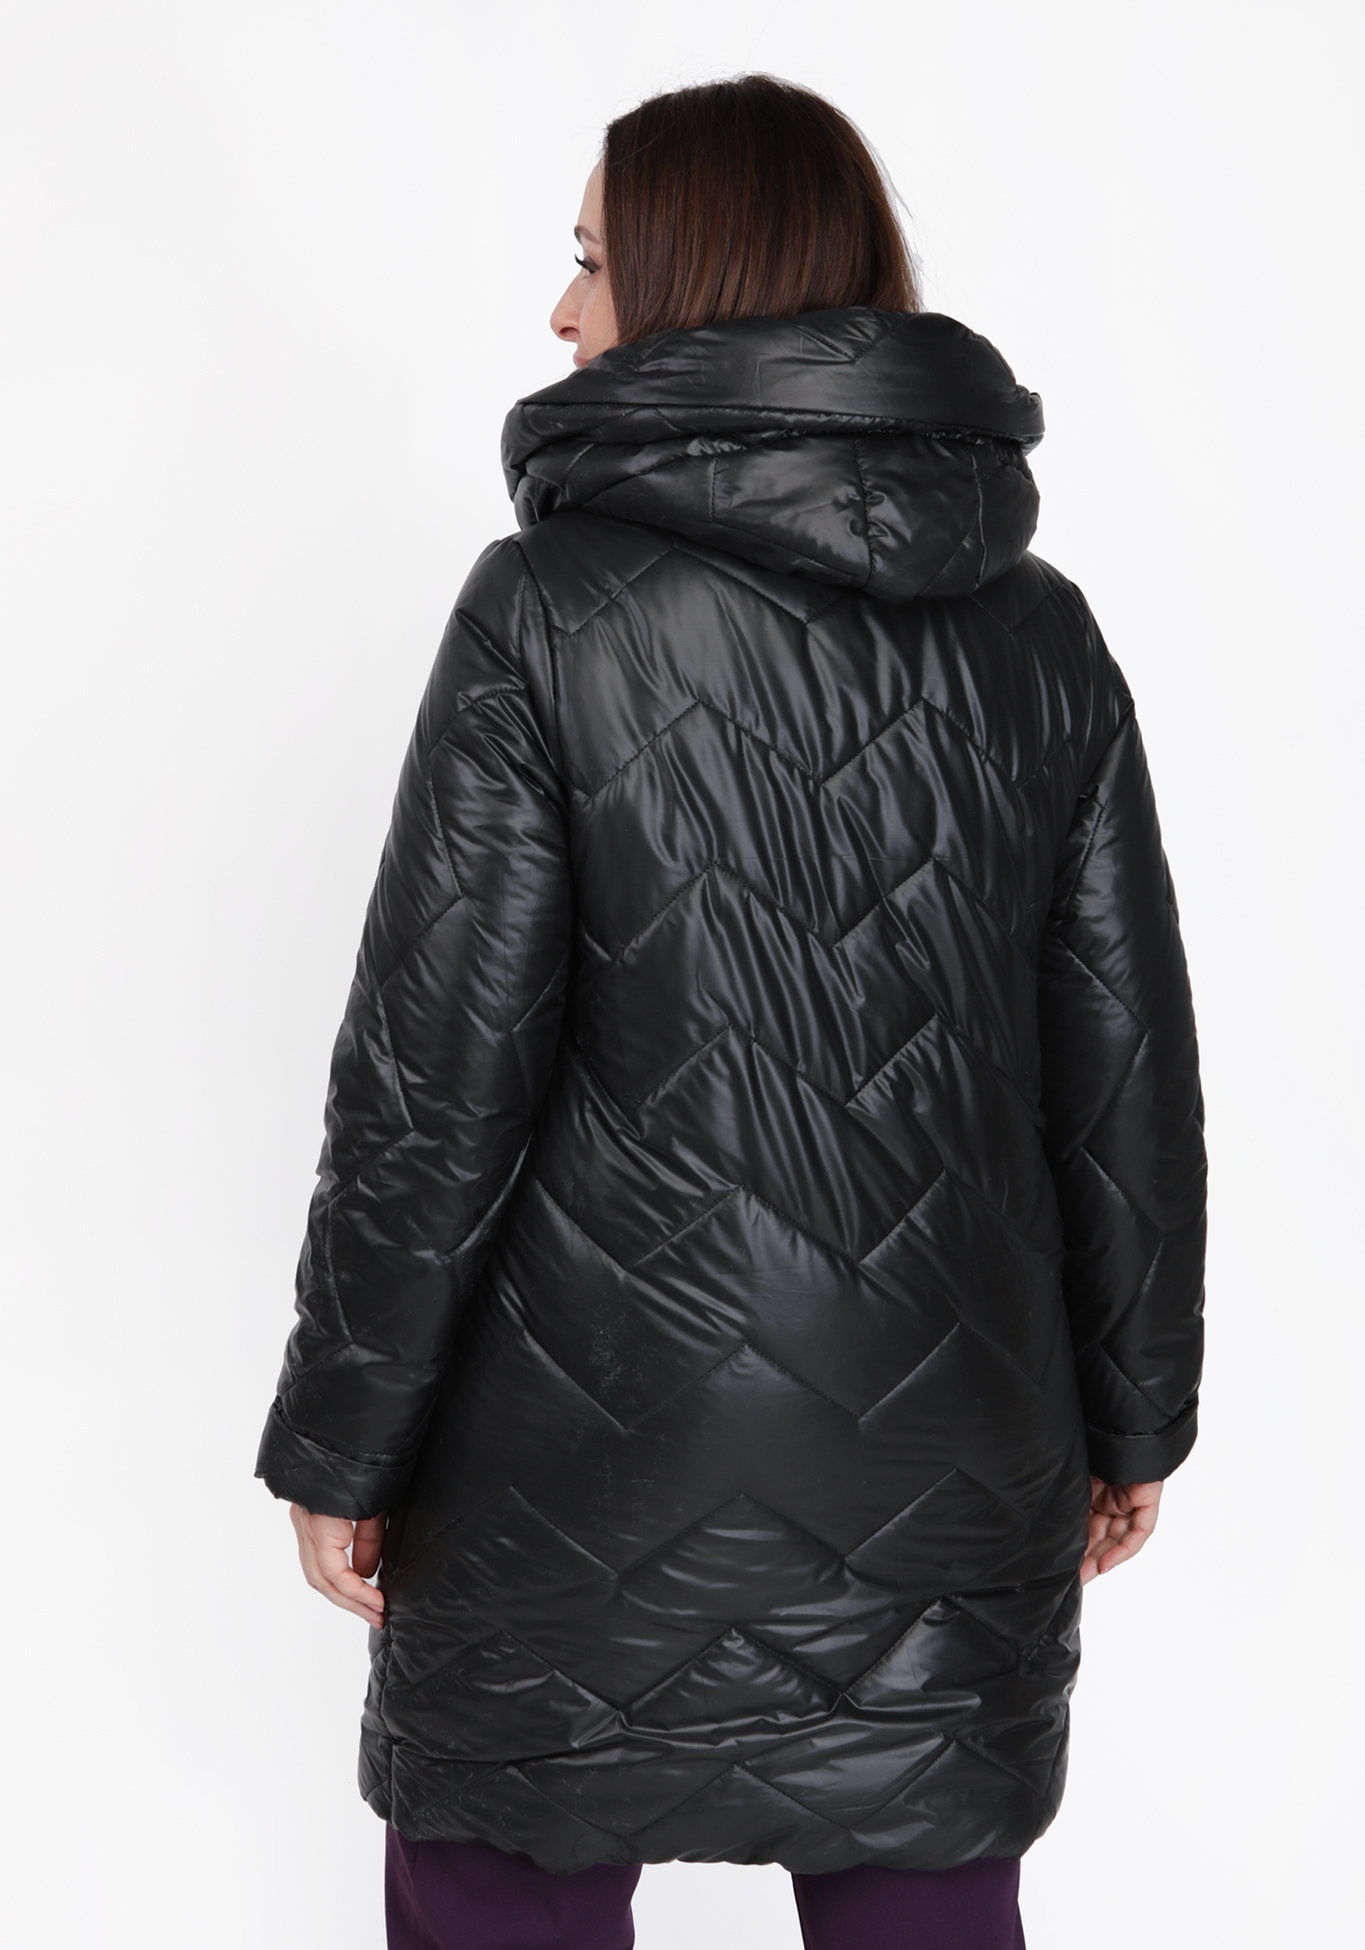 Куртка с тесьмой из страз на карманах Julia Weber, размер 50, цвет черный - фото 3